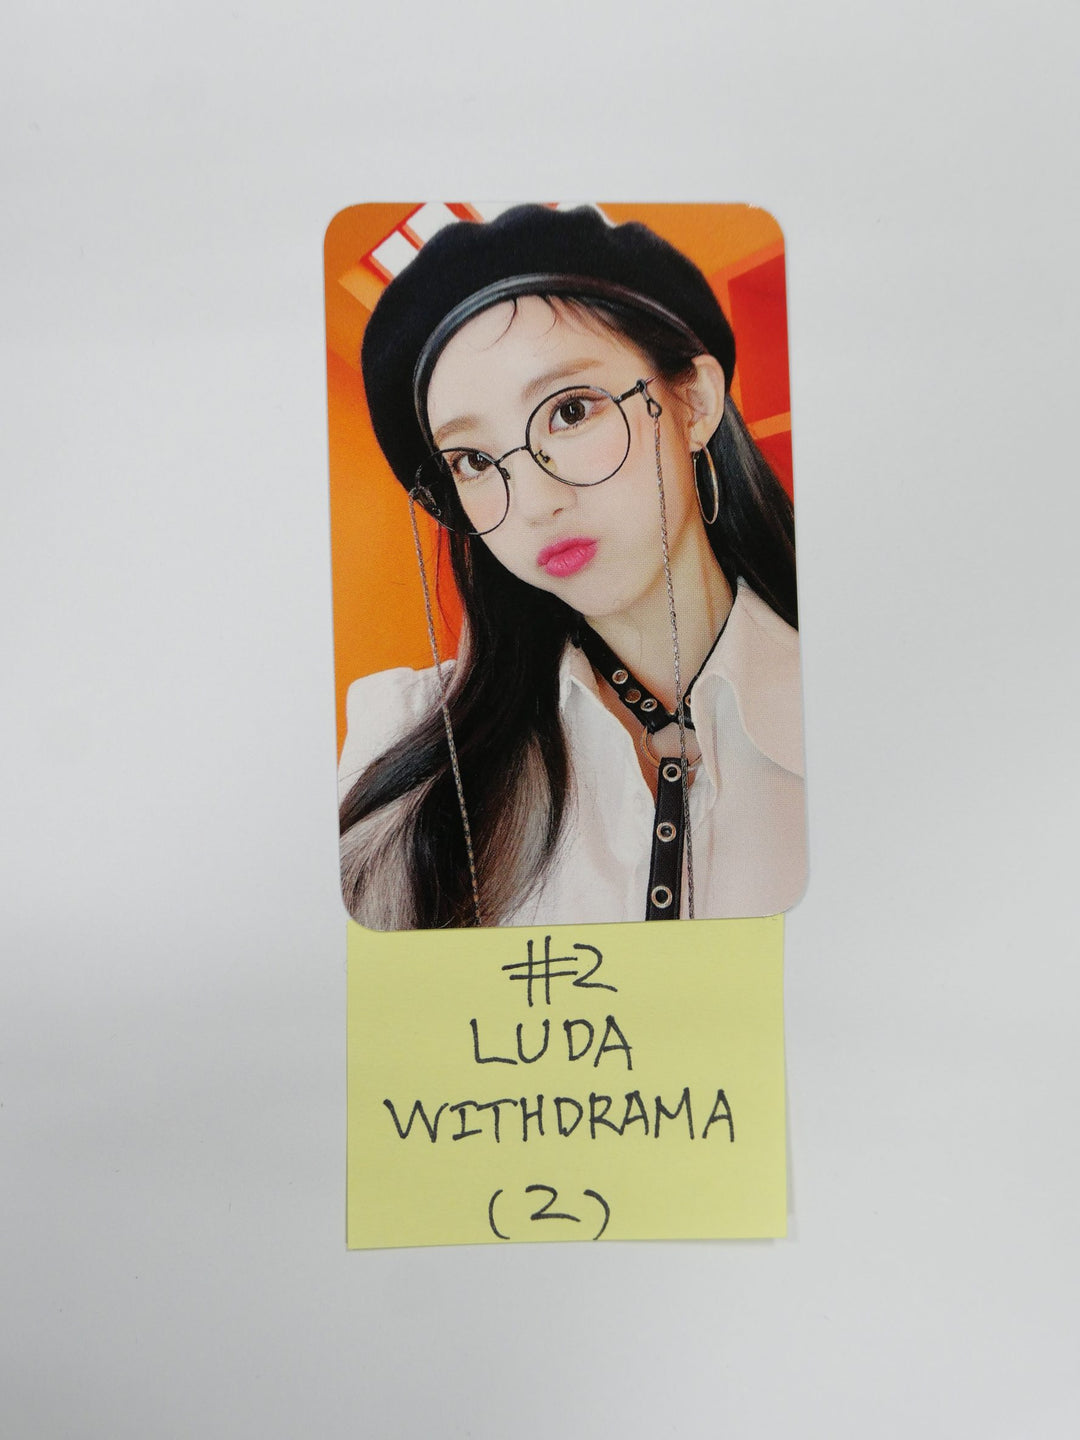 우주소녀 쵸컴 "슈퍼여퍼!" 2nd Single - Withdrama 팬사인회 이벤트 포토카드